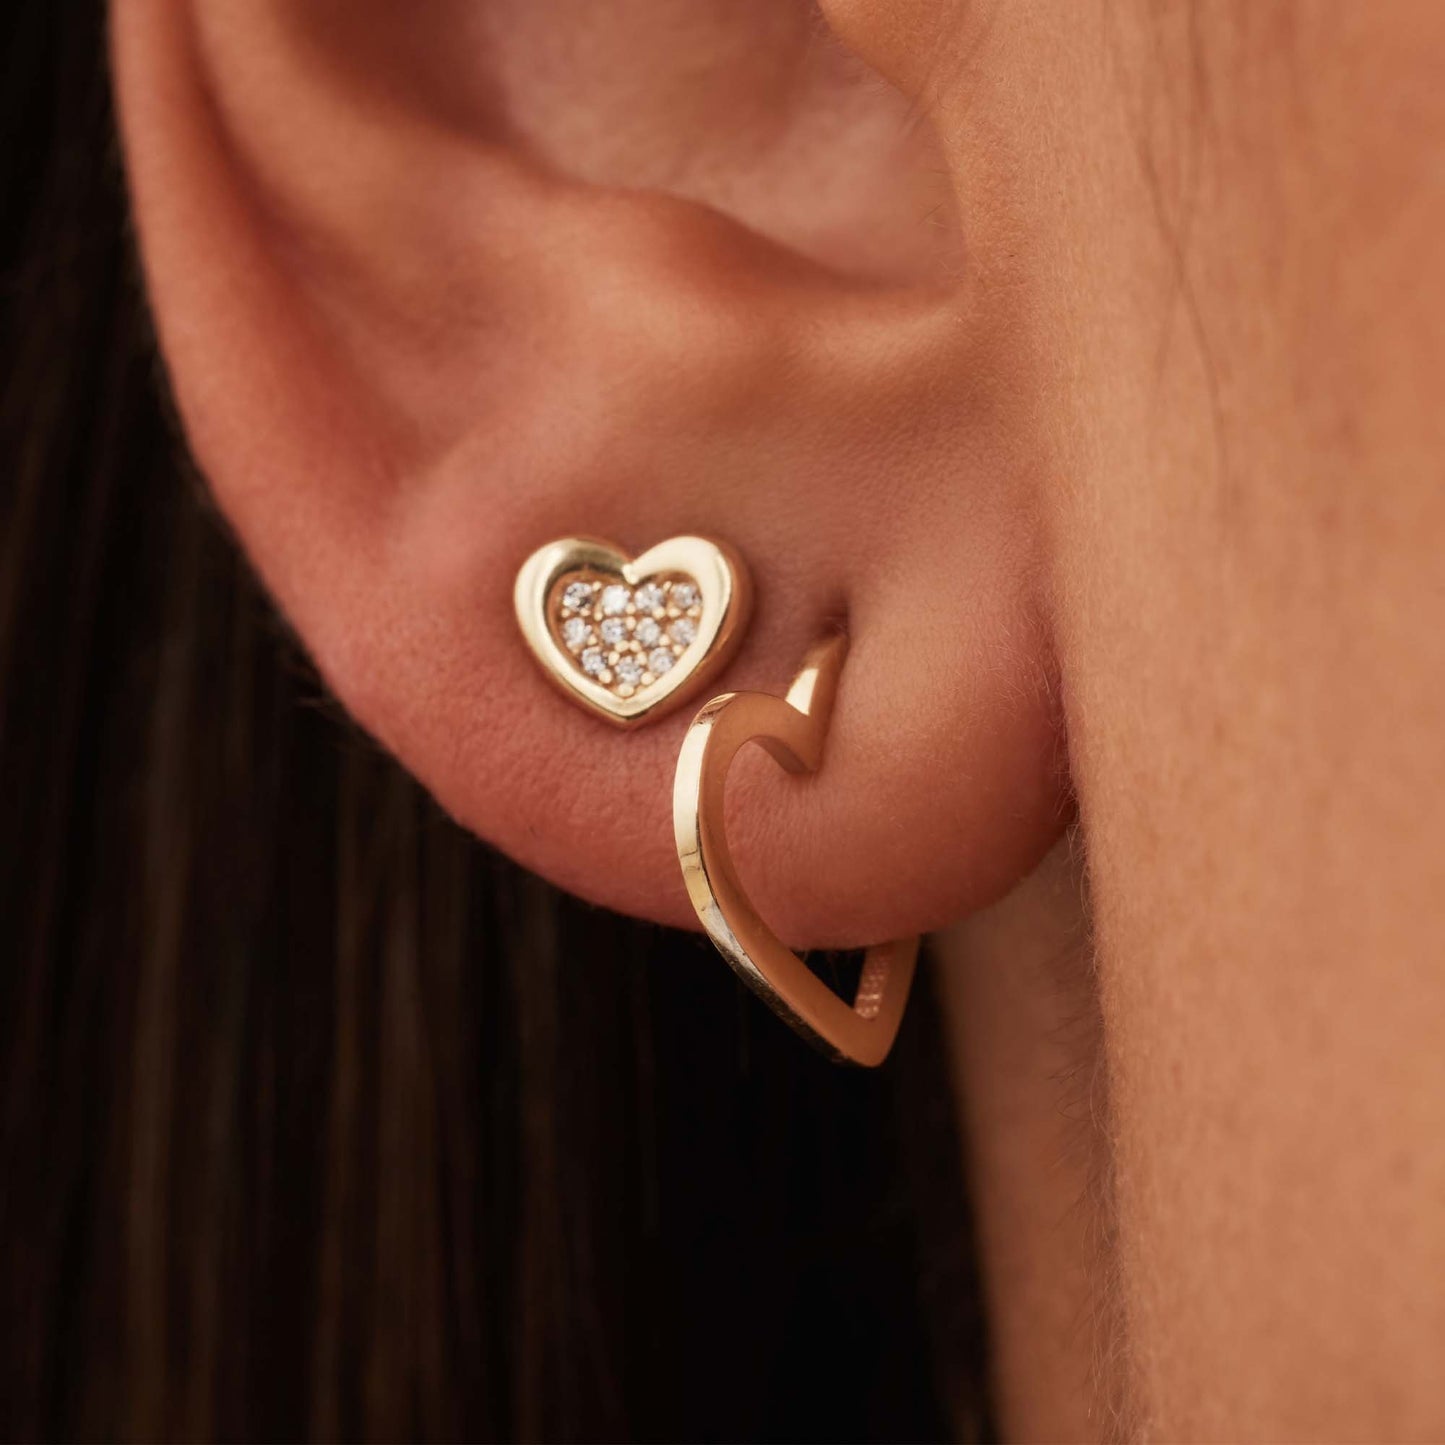 Della Spiga Giulia 9 karat gold ear studs with heart